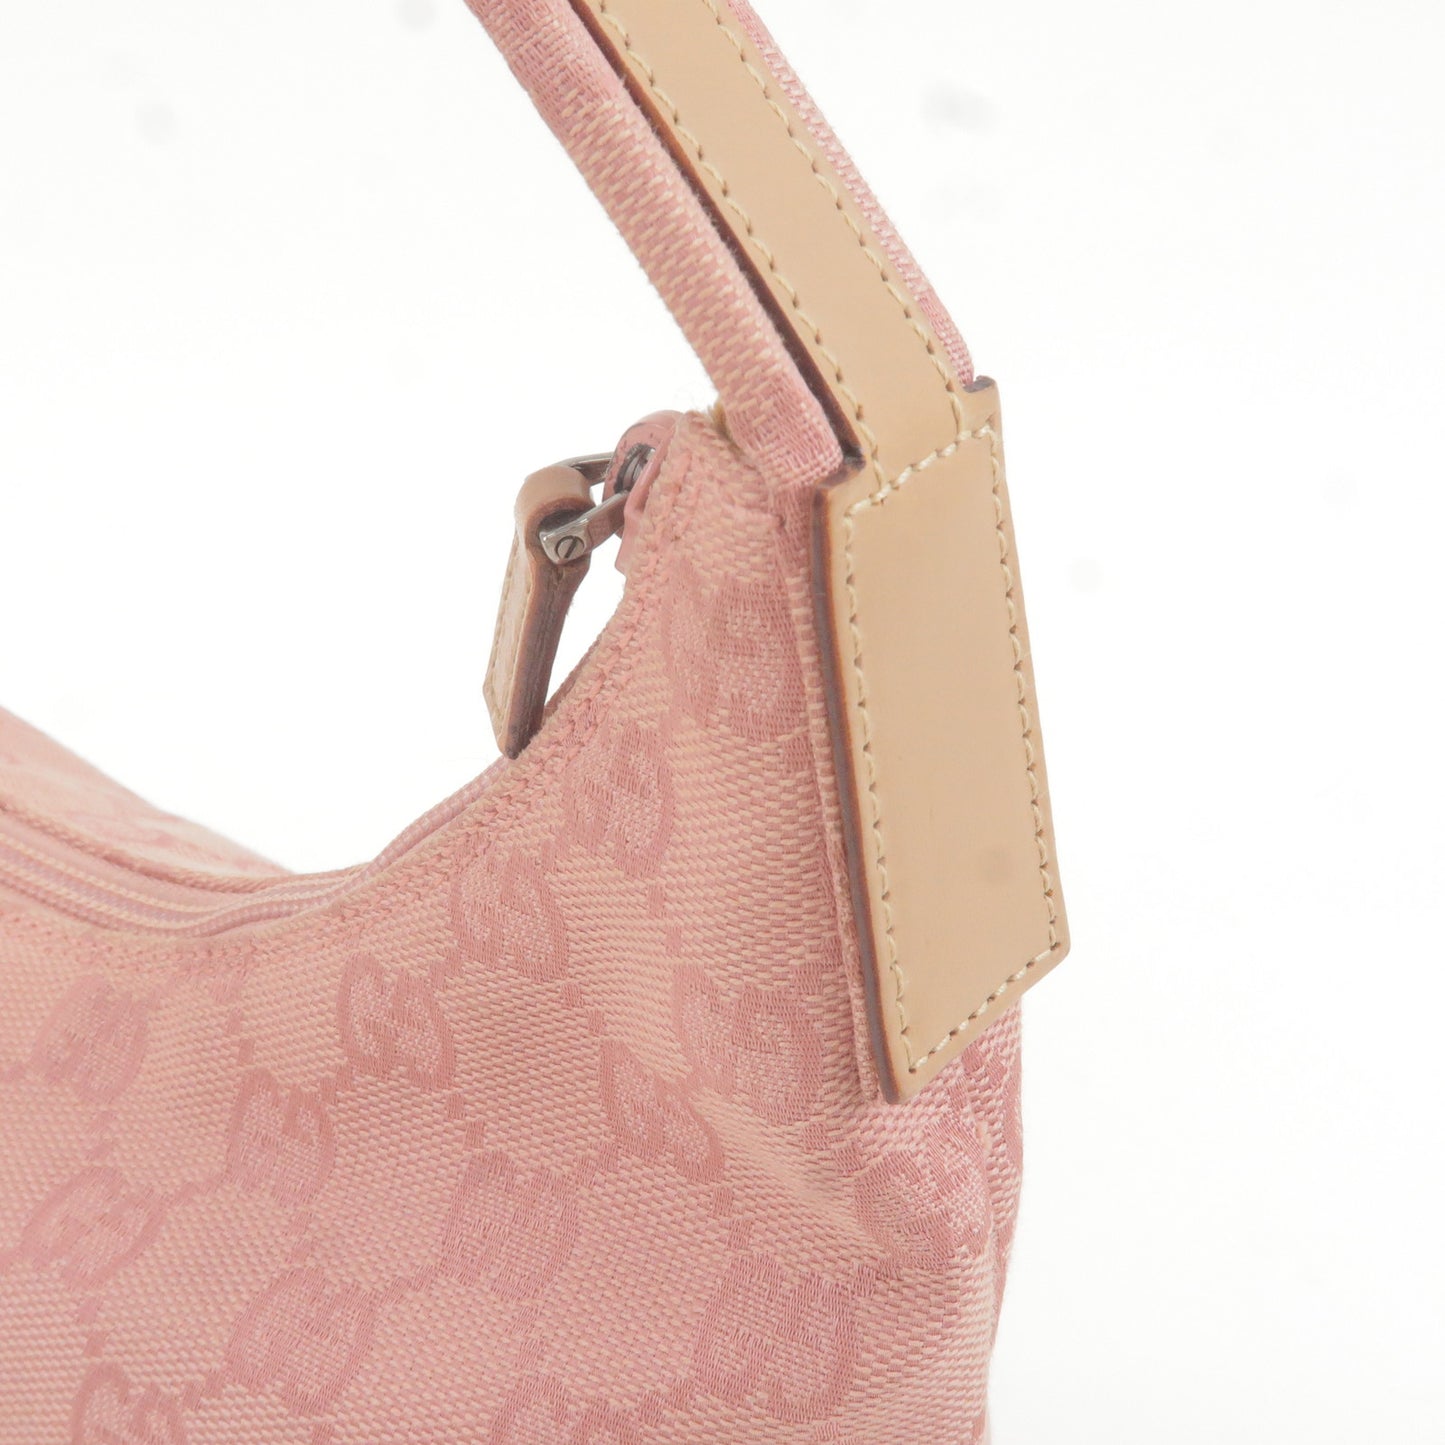 GUCCI GG Canvas Leather Shoulder Bag Hand Bag Pink 001.3386